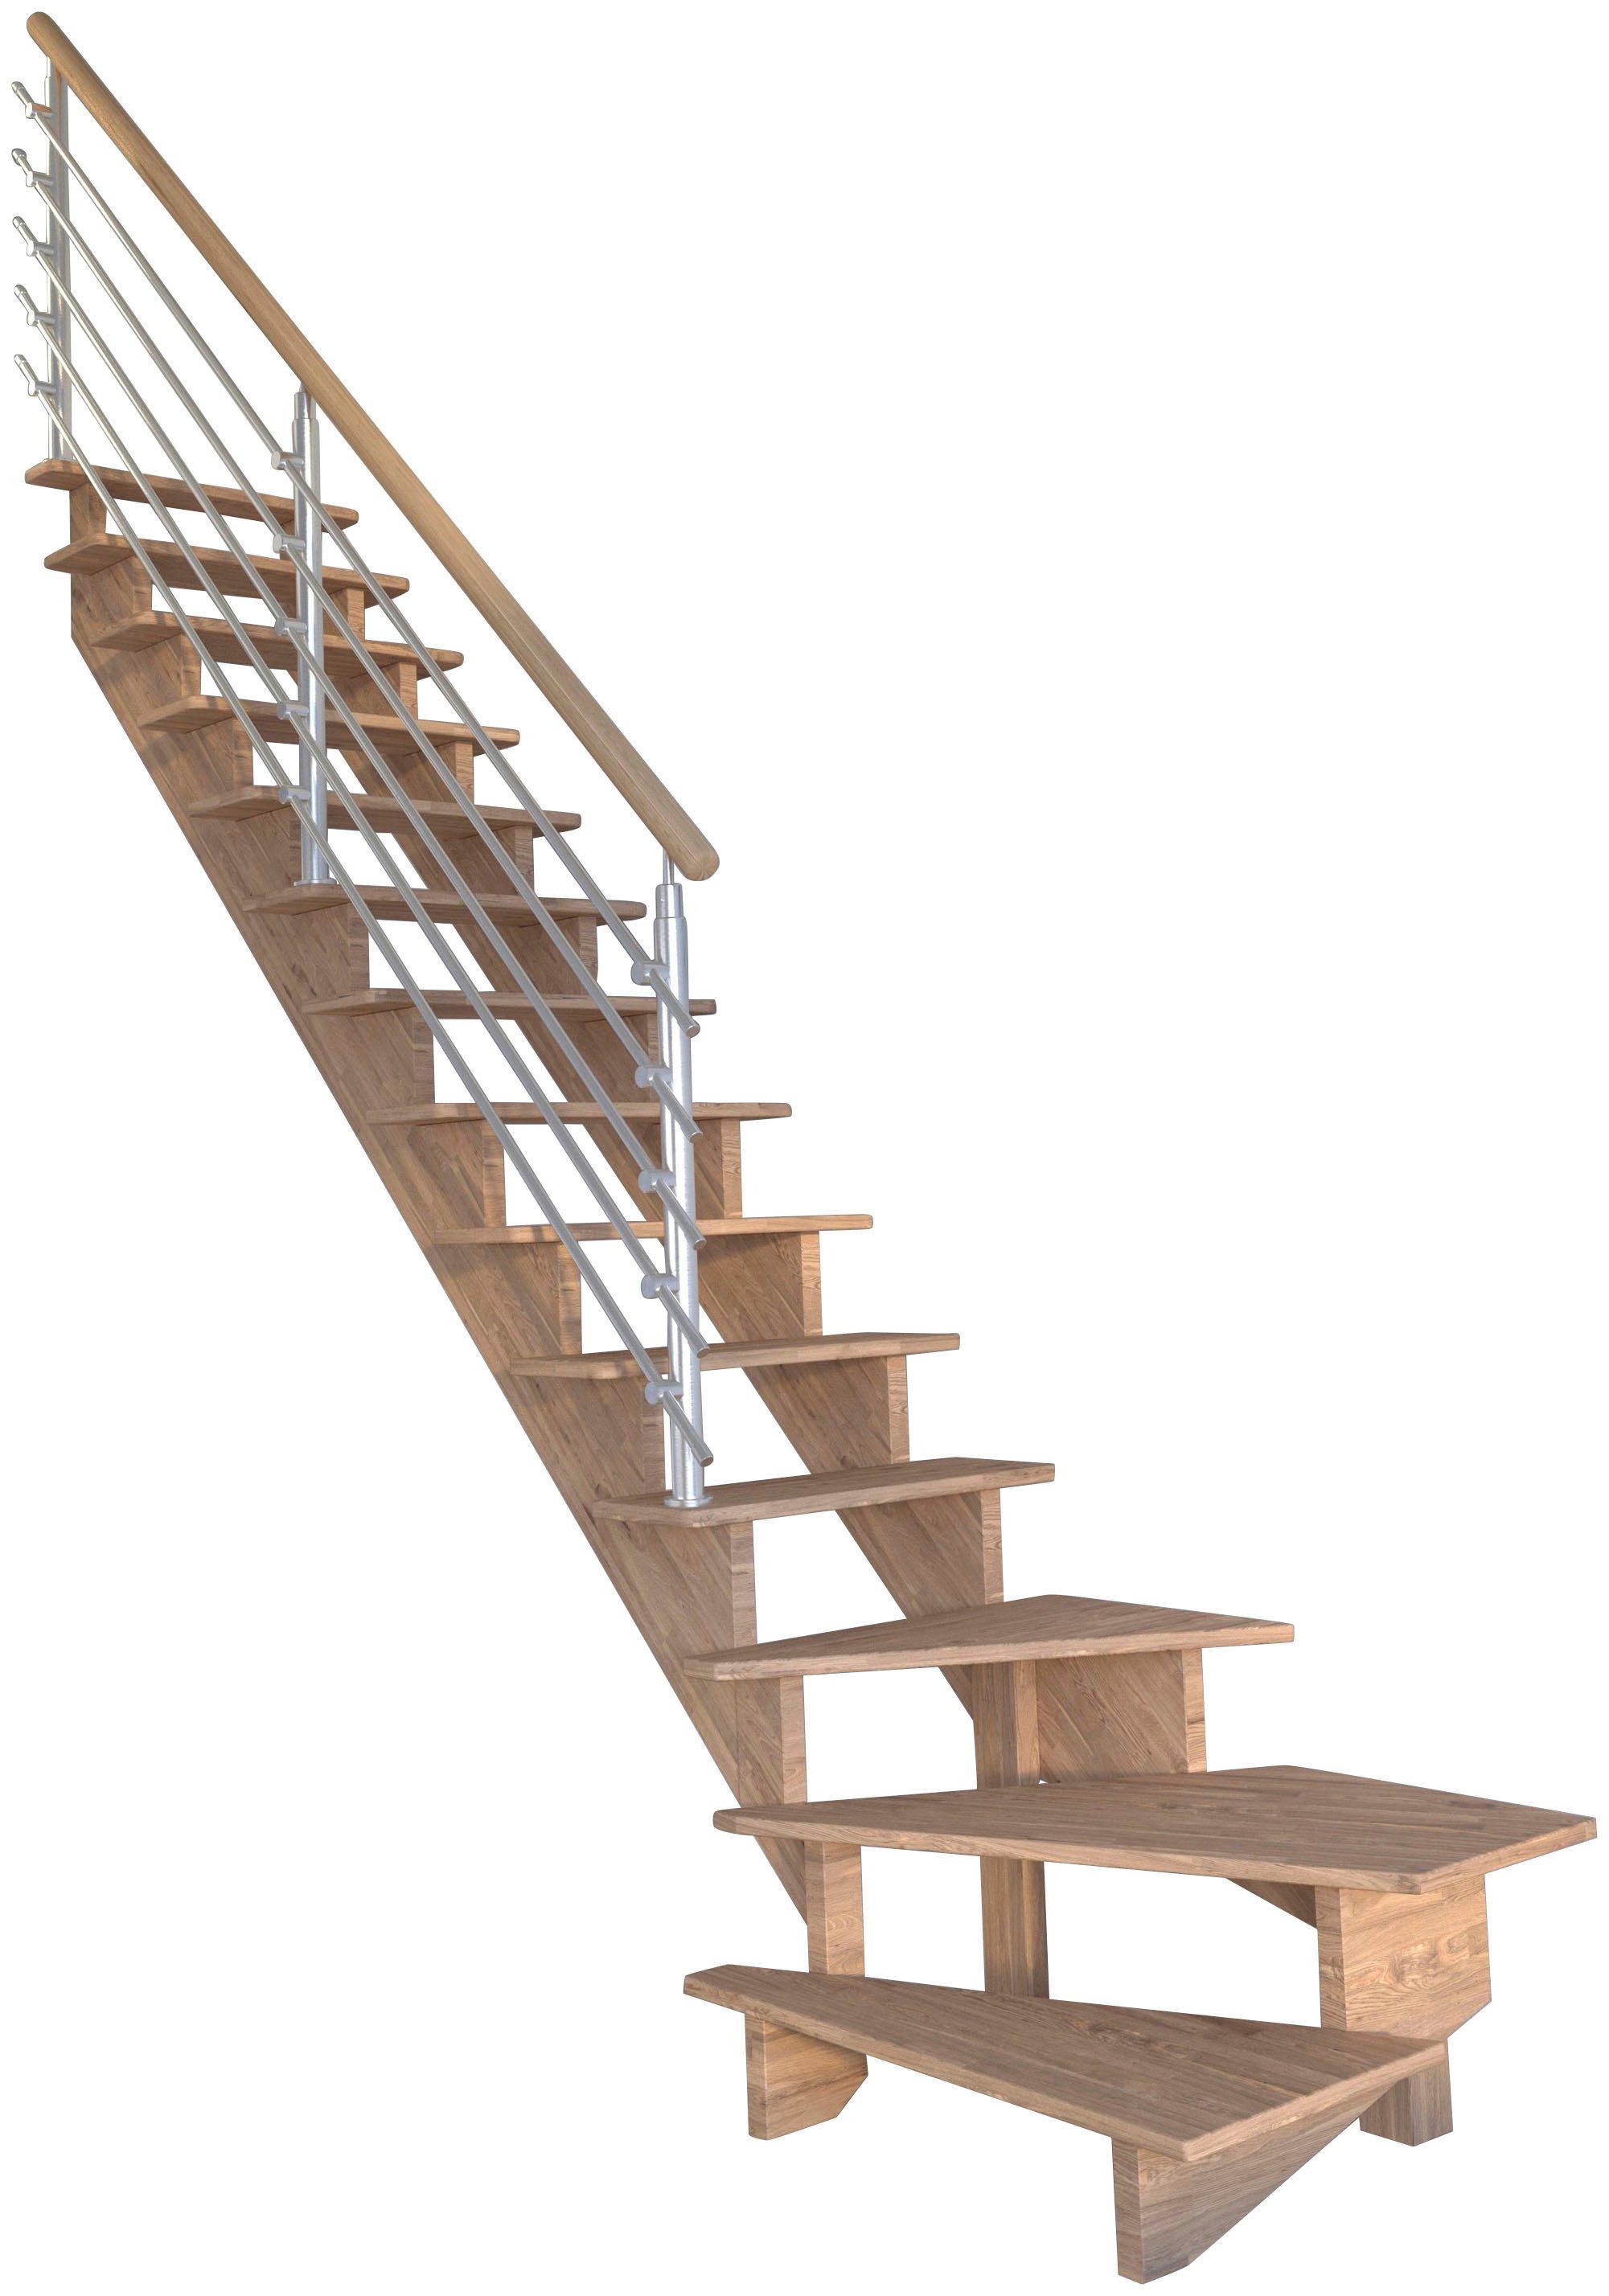 Starwood Systemtreppe Massivholz Lindos, Design-Geländer Edelstahl, für Geschosshöhen bis 300 cm, Stufen offen, gewendelt Links, Durchgehende Wangenteile